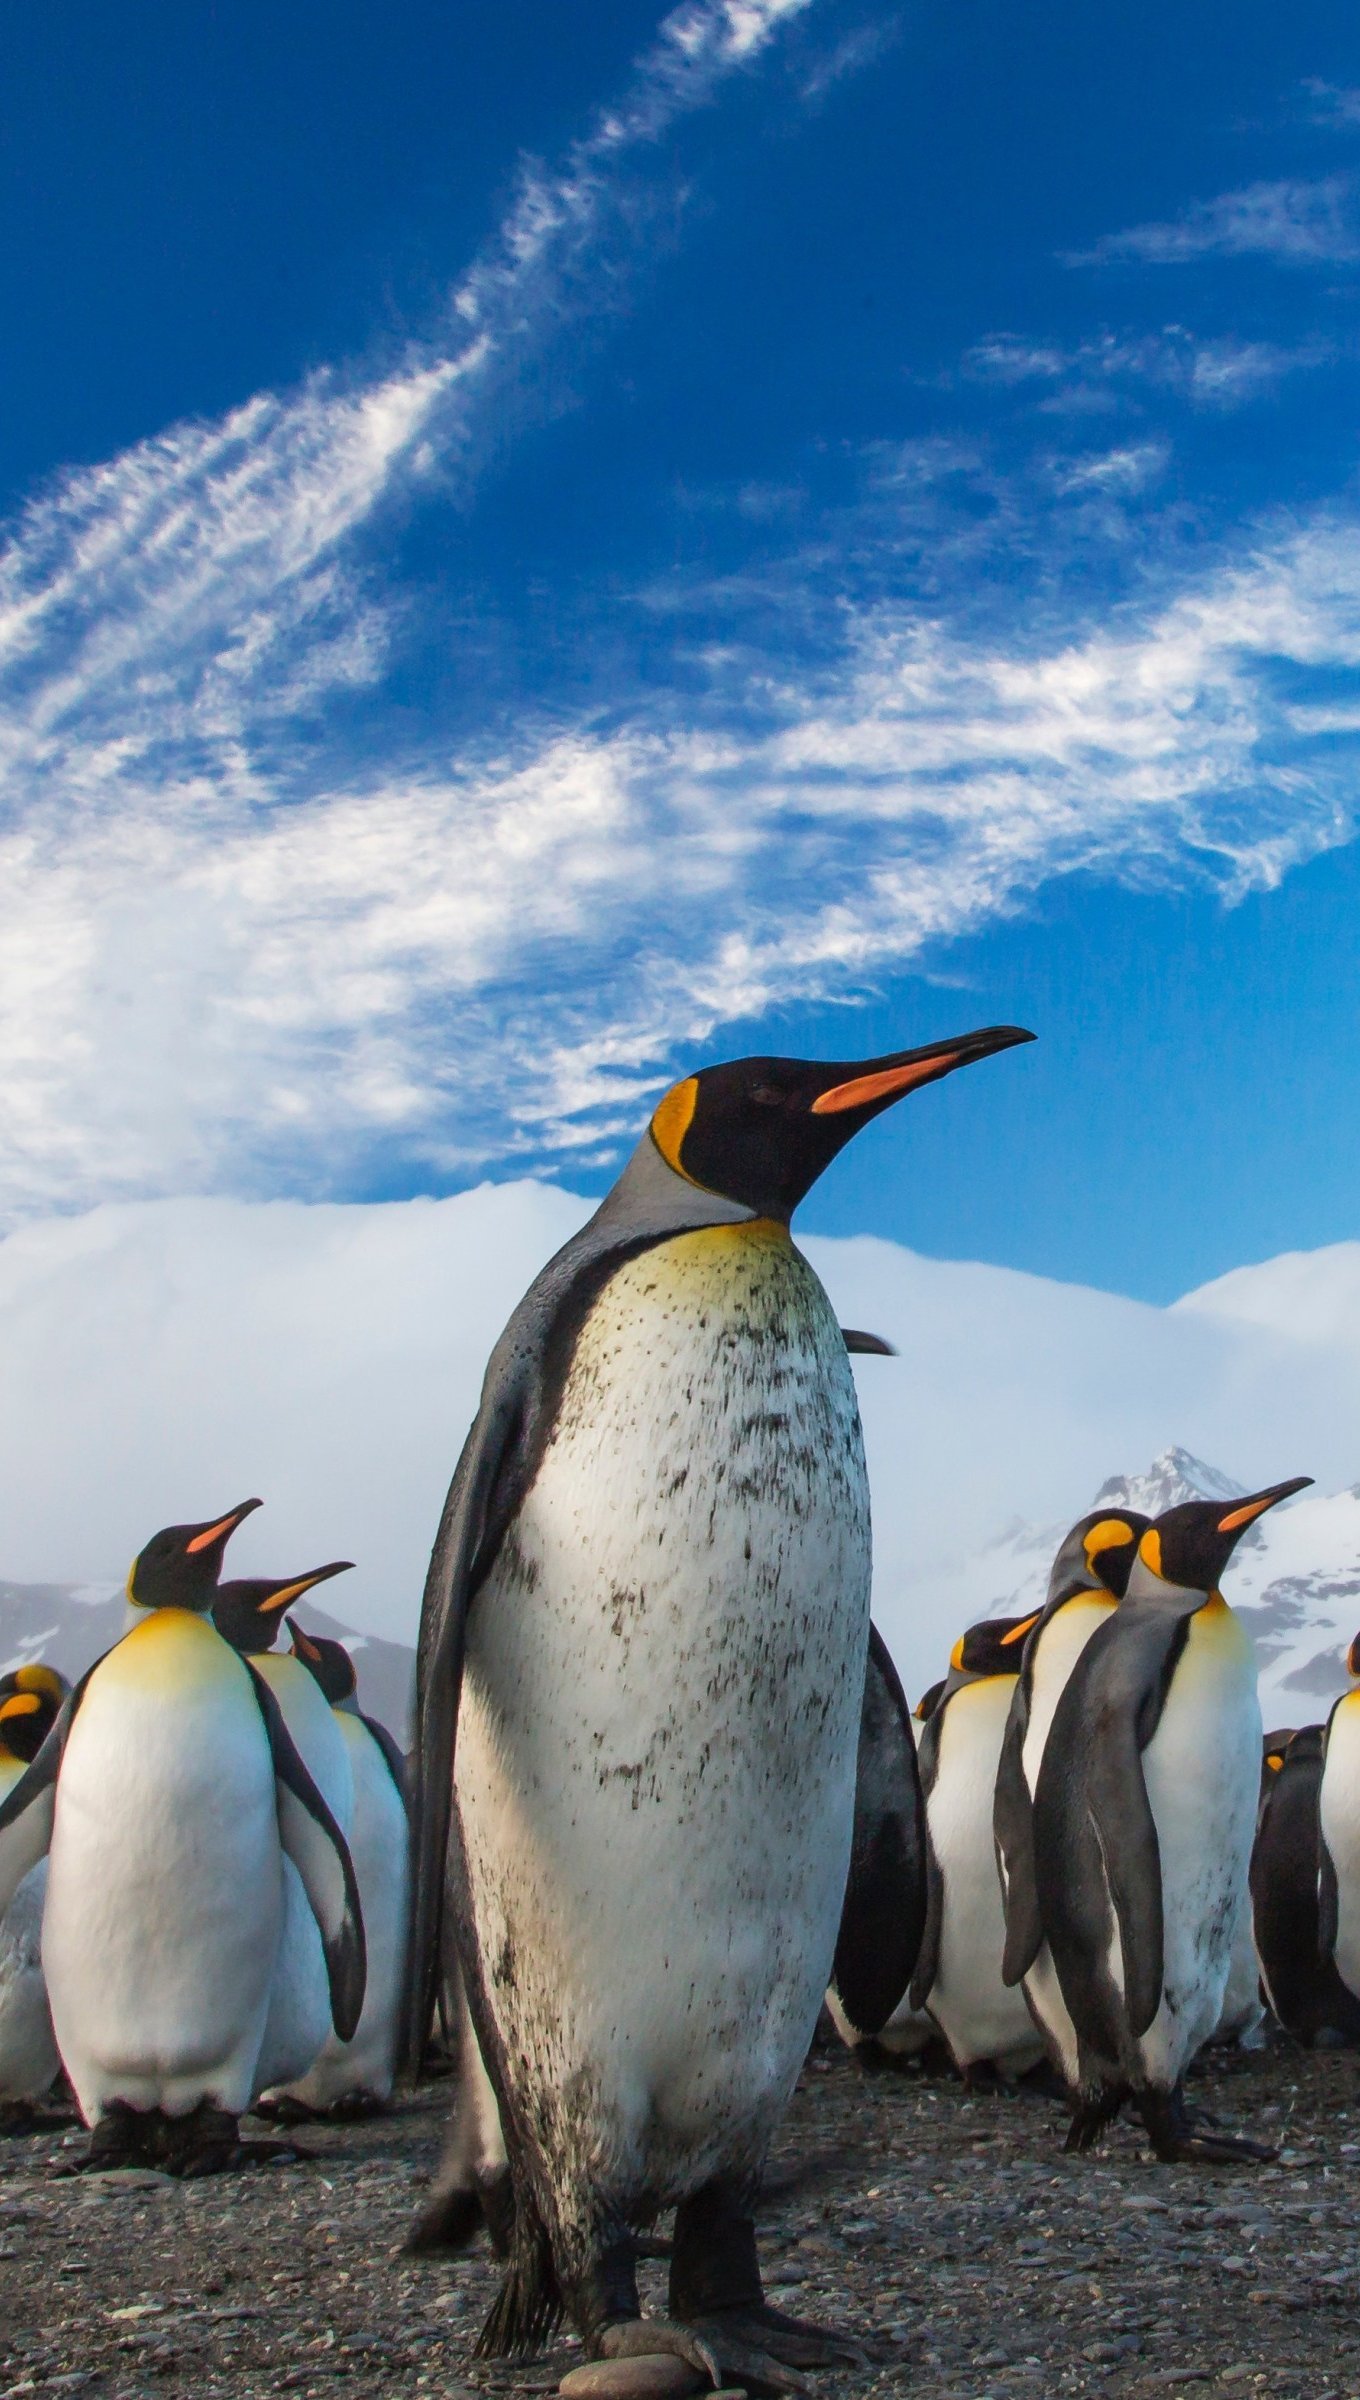 Fondos de pantalla Pingüinos caminando Vertical